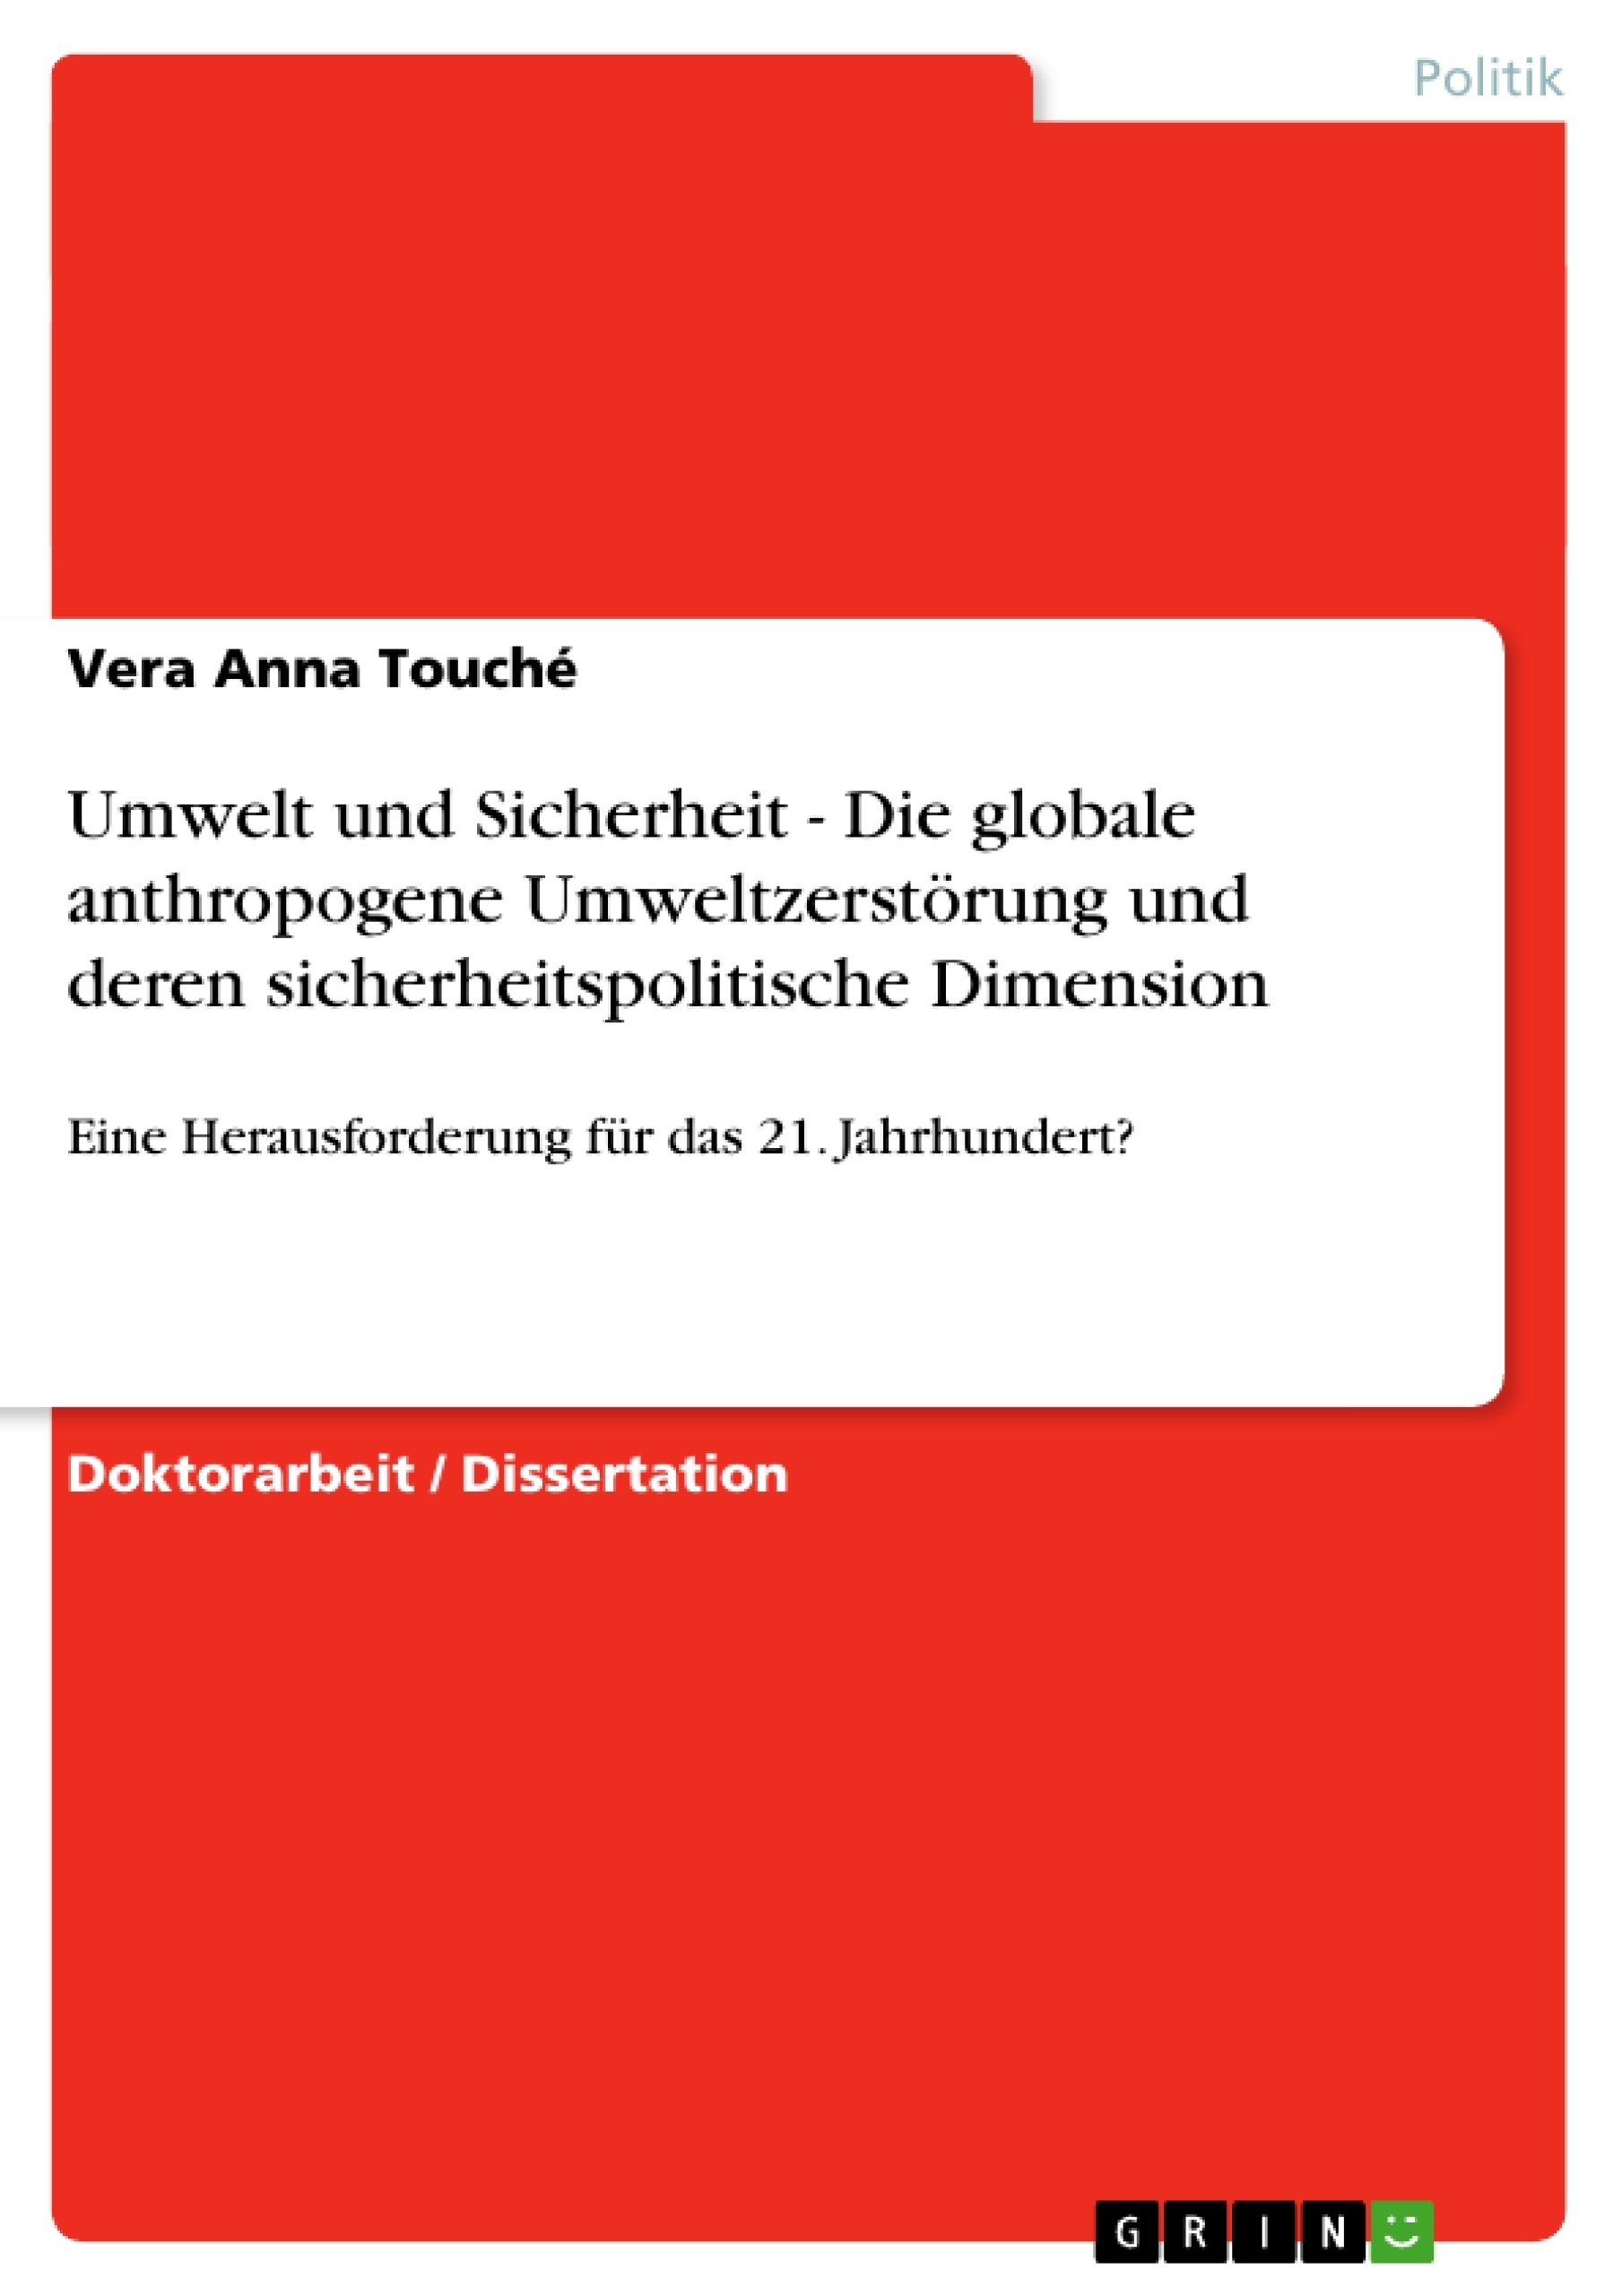 Titre: Umwelt und Sicherheit - Die globale anthropogene Umweltzerstörung und deren sicherheitspolitische Dimension